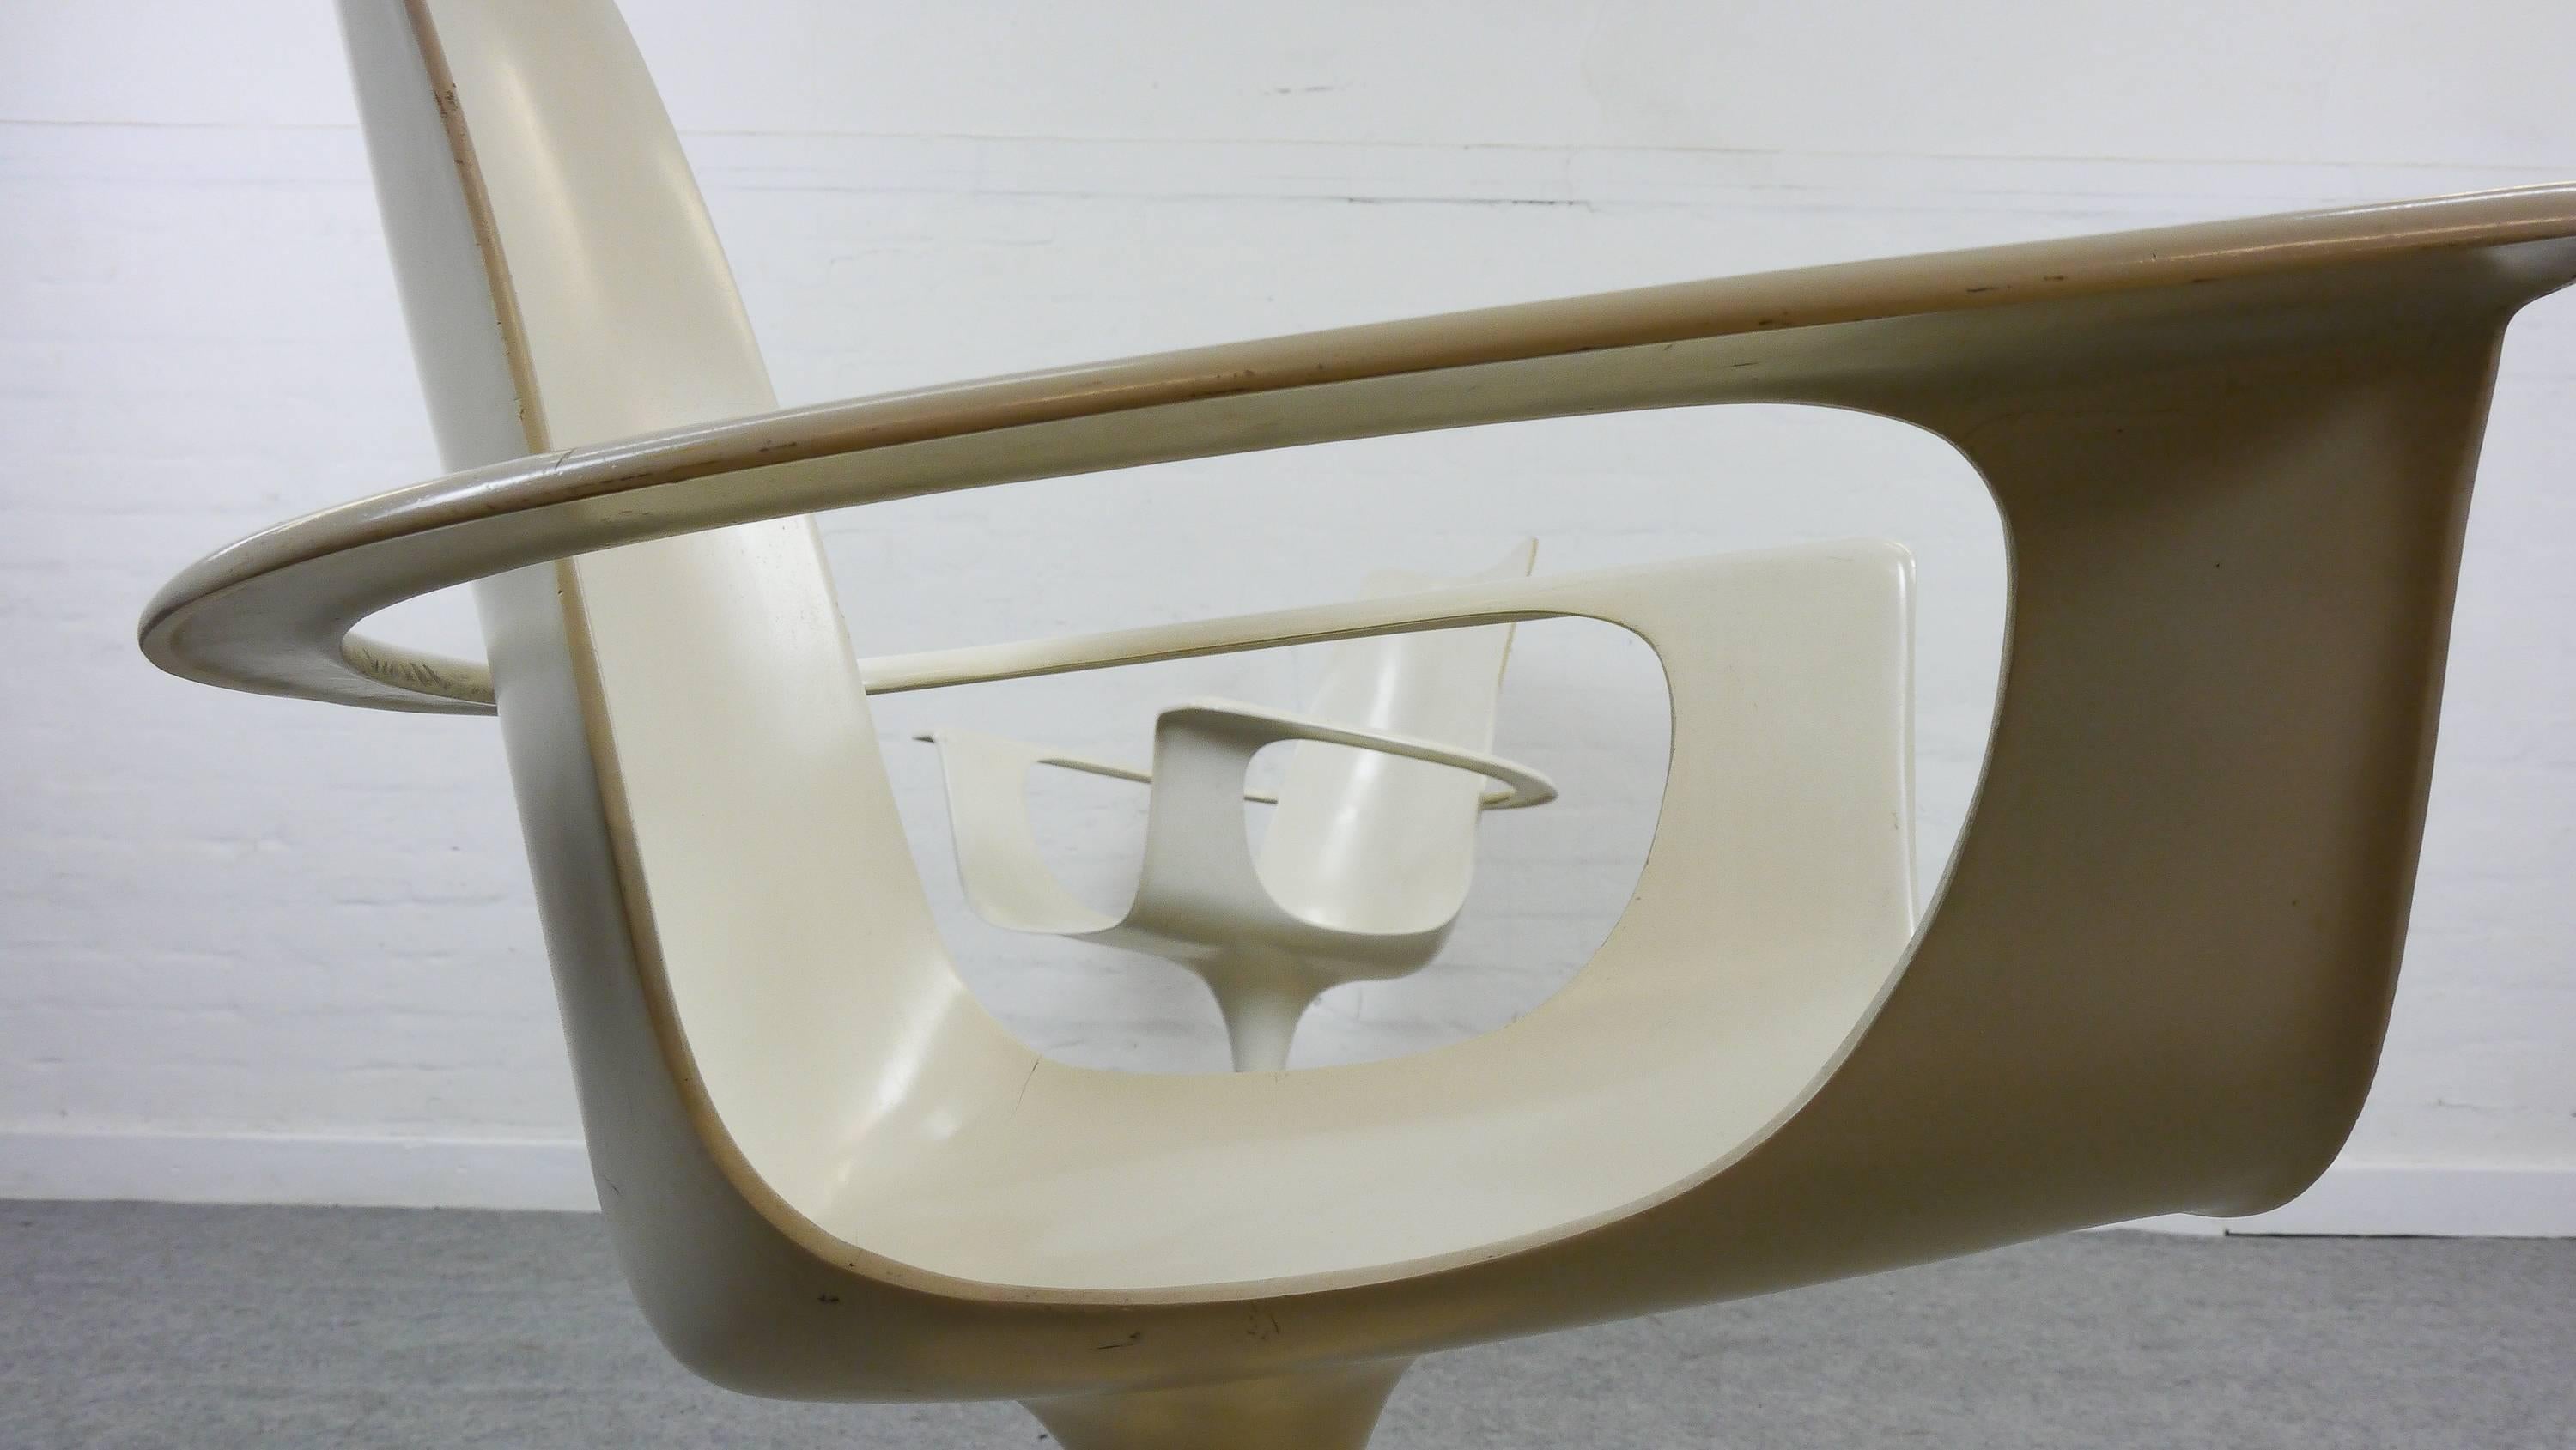 Sammlerstück - Satz von zwei Sesseln mit frei beweglicher Armlehne. Entworfen von Luigi Colani 1974:: hergestellt von Lusch:: Deutschland. Der Stuhl trägt den Spitznamen 